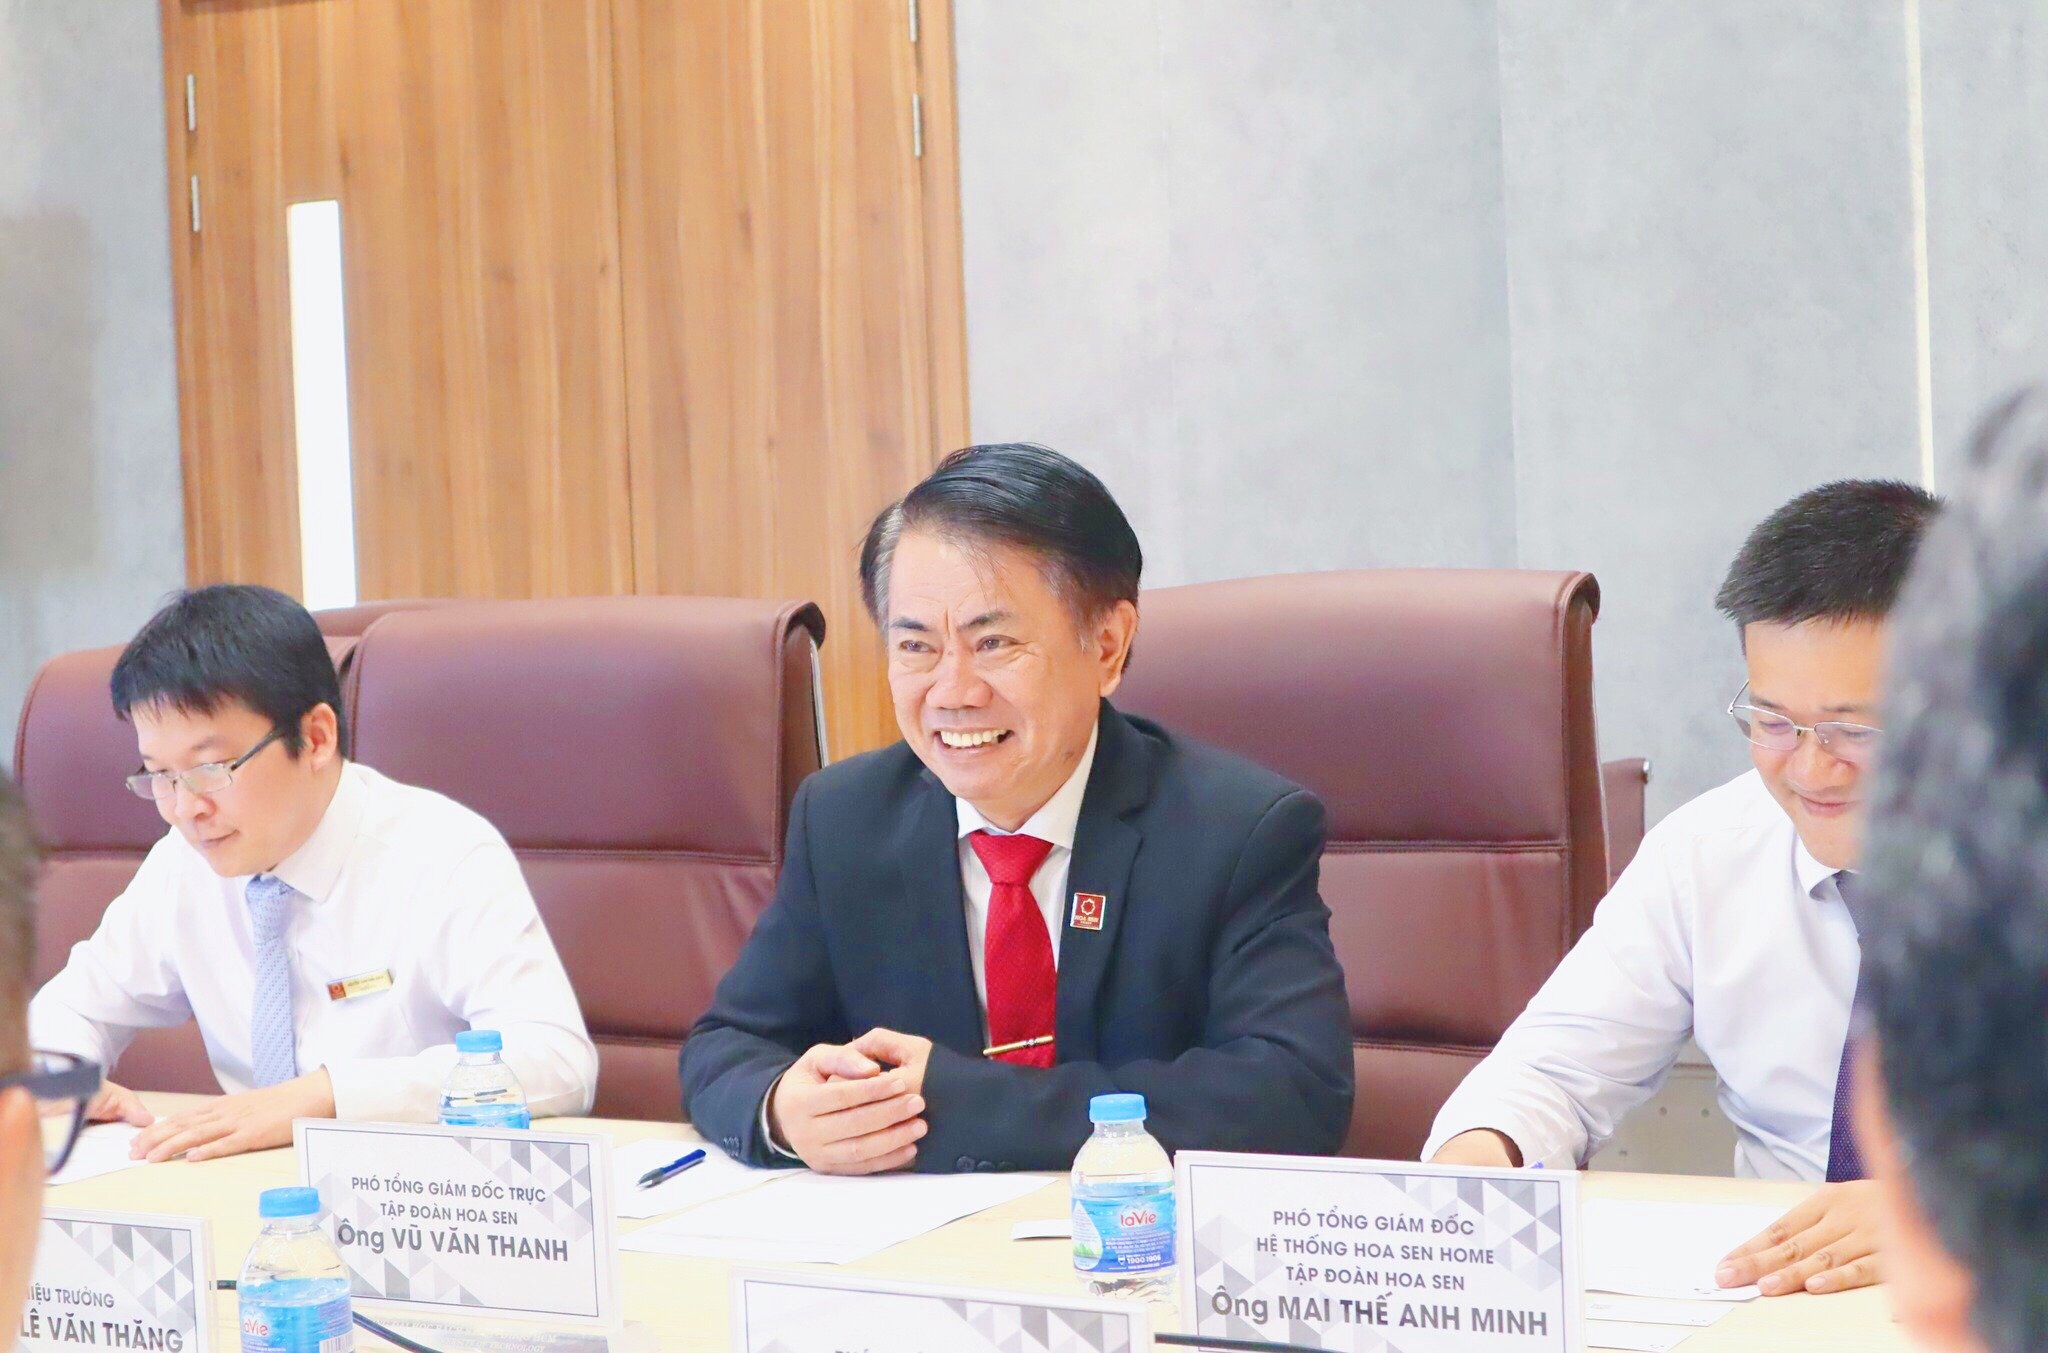 Ông Vũ Văn Thanh – Phó Tổng Giám đốc Trực Tập đoàn Hoa Sen tại buổi Lễ ký kết thỏa thuận hợp tác